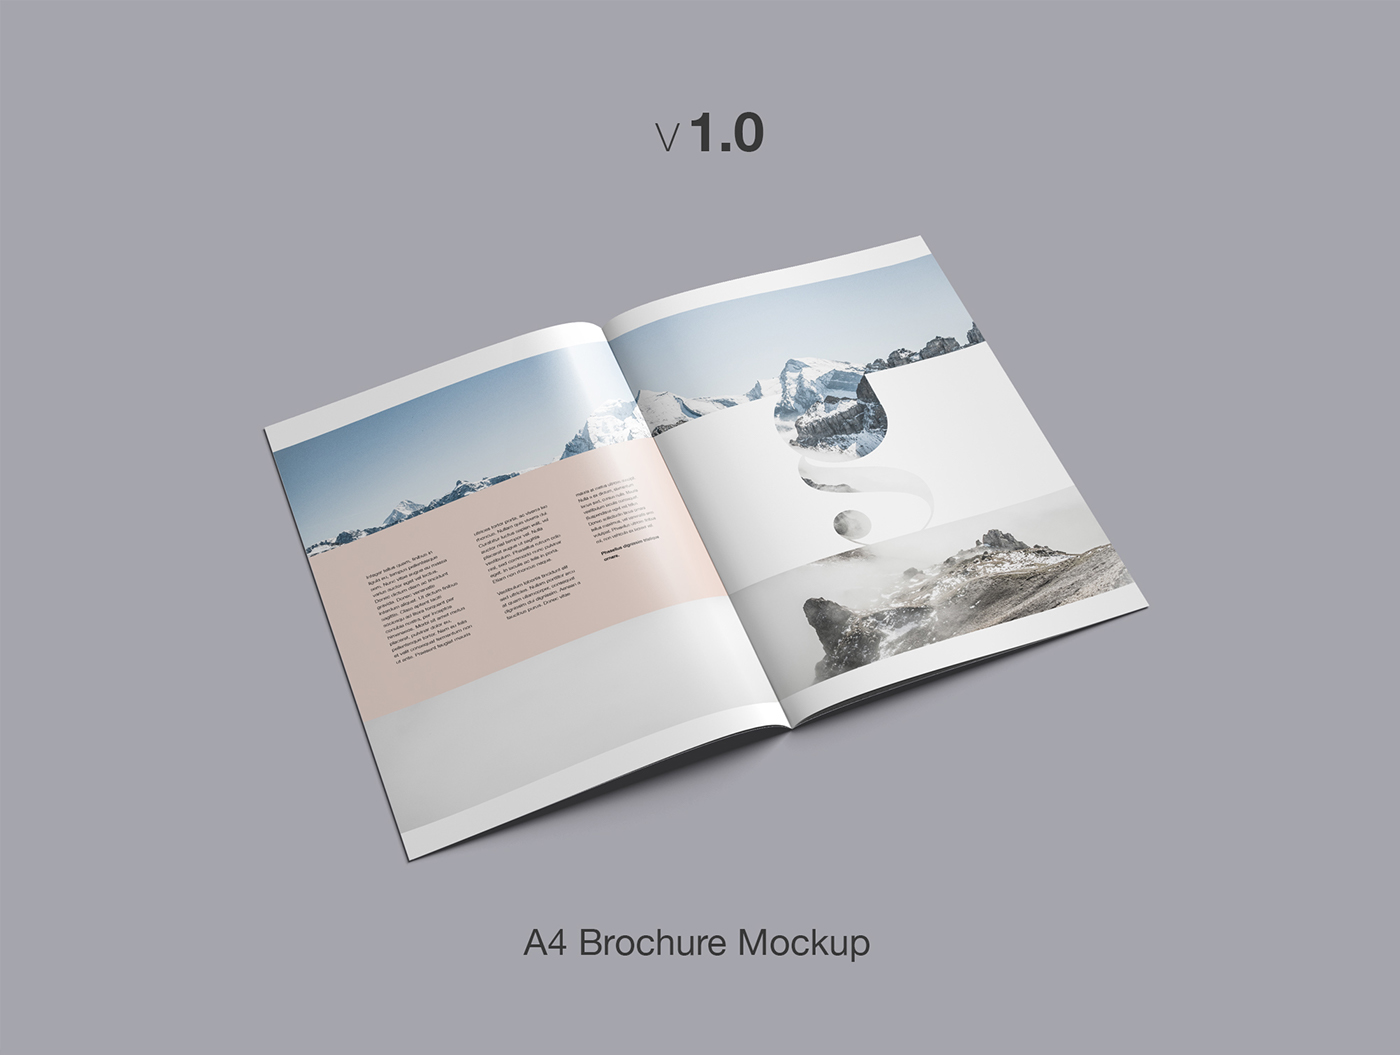 A4 brochure mockup brochure Mockup mock-up free freebie download design book Booklet magazine template